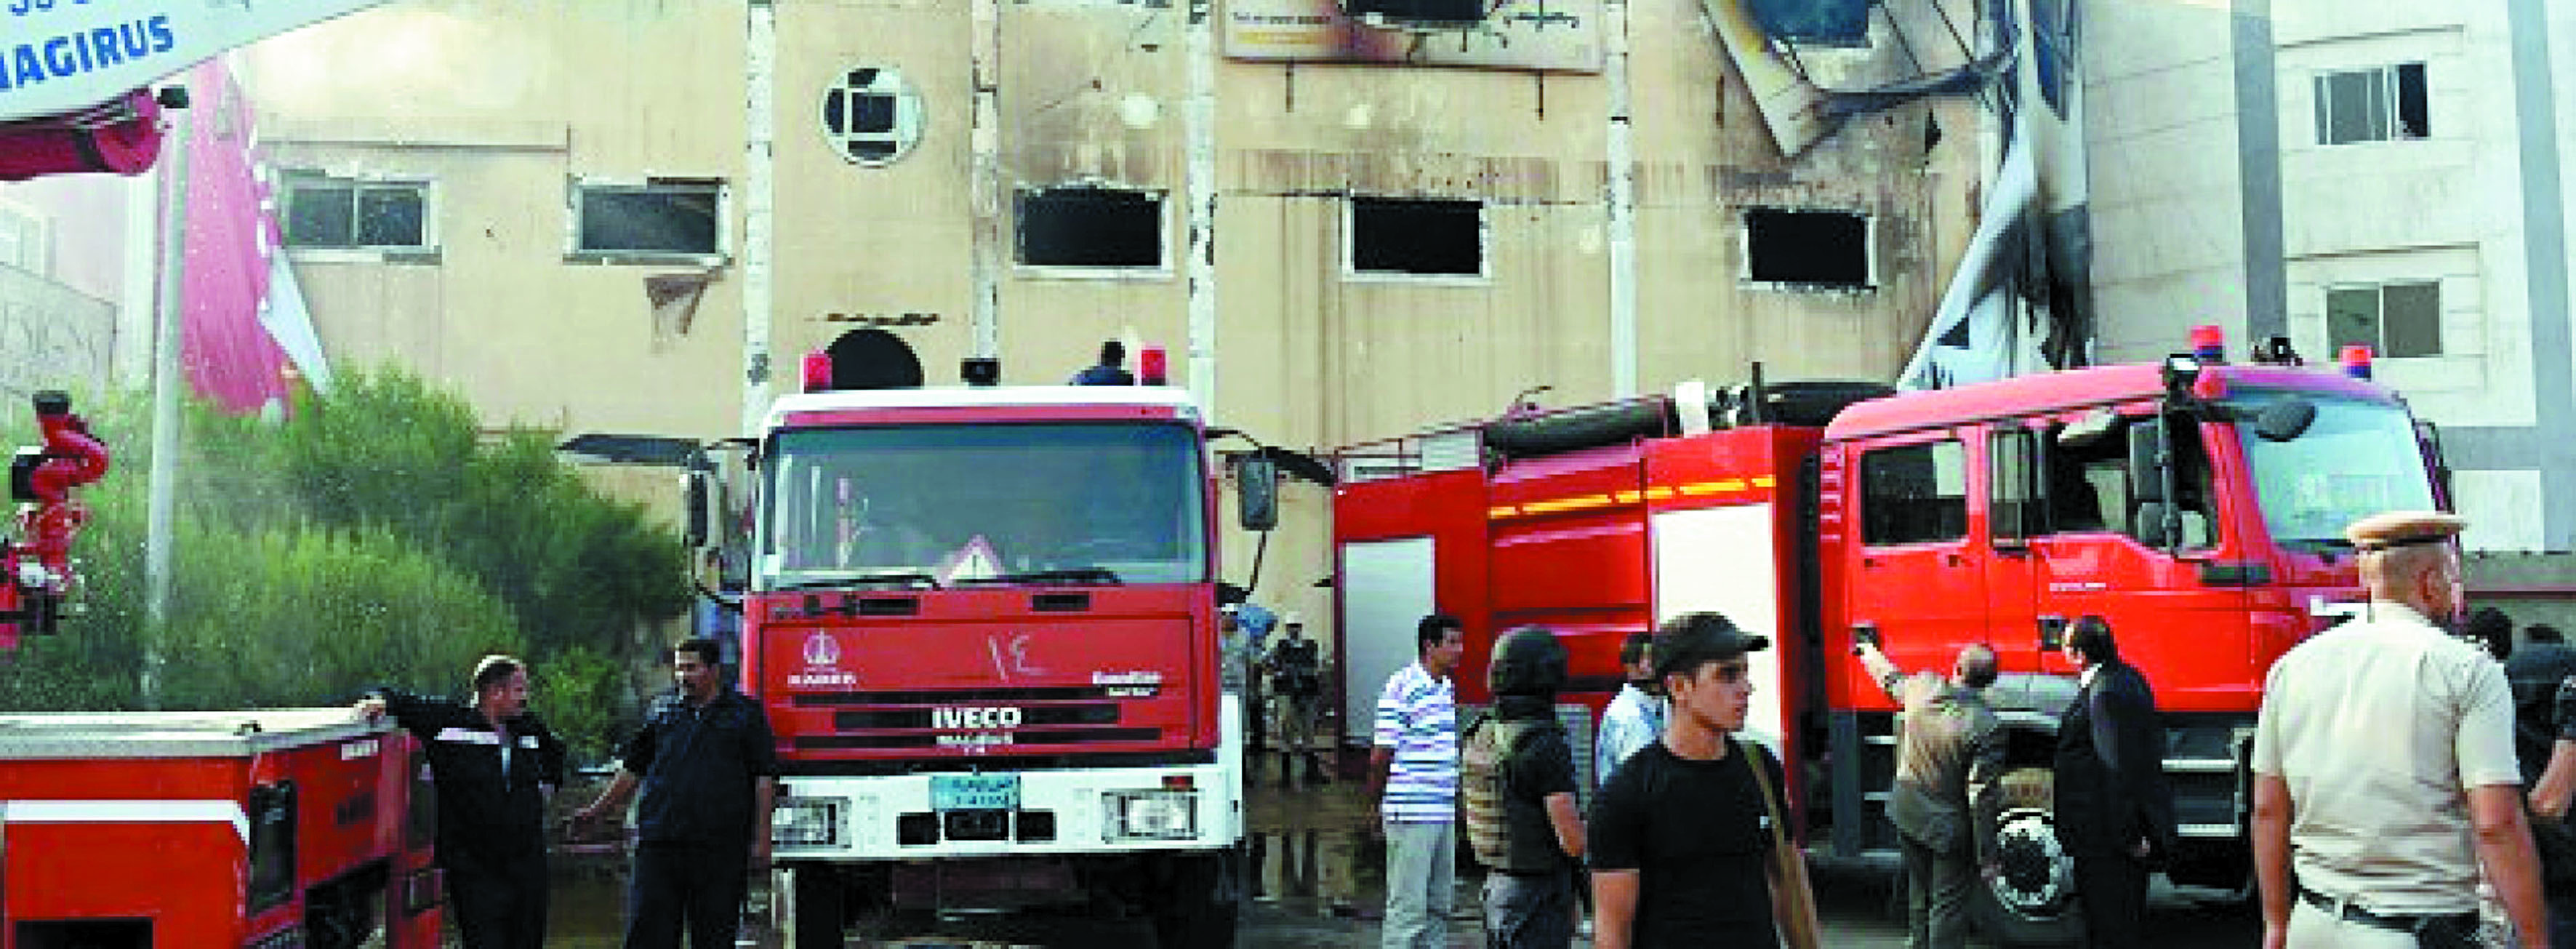 Un incendie dans une usine de meubles fait 25 morts au nord du Caire